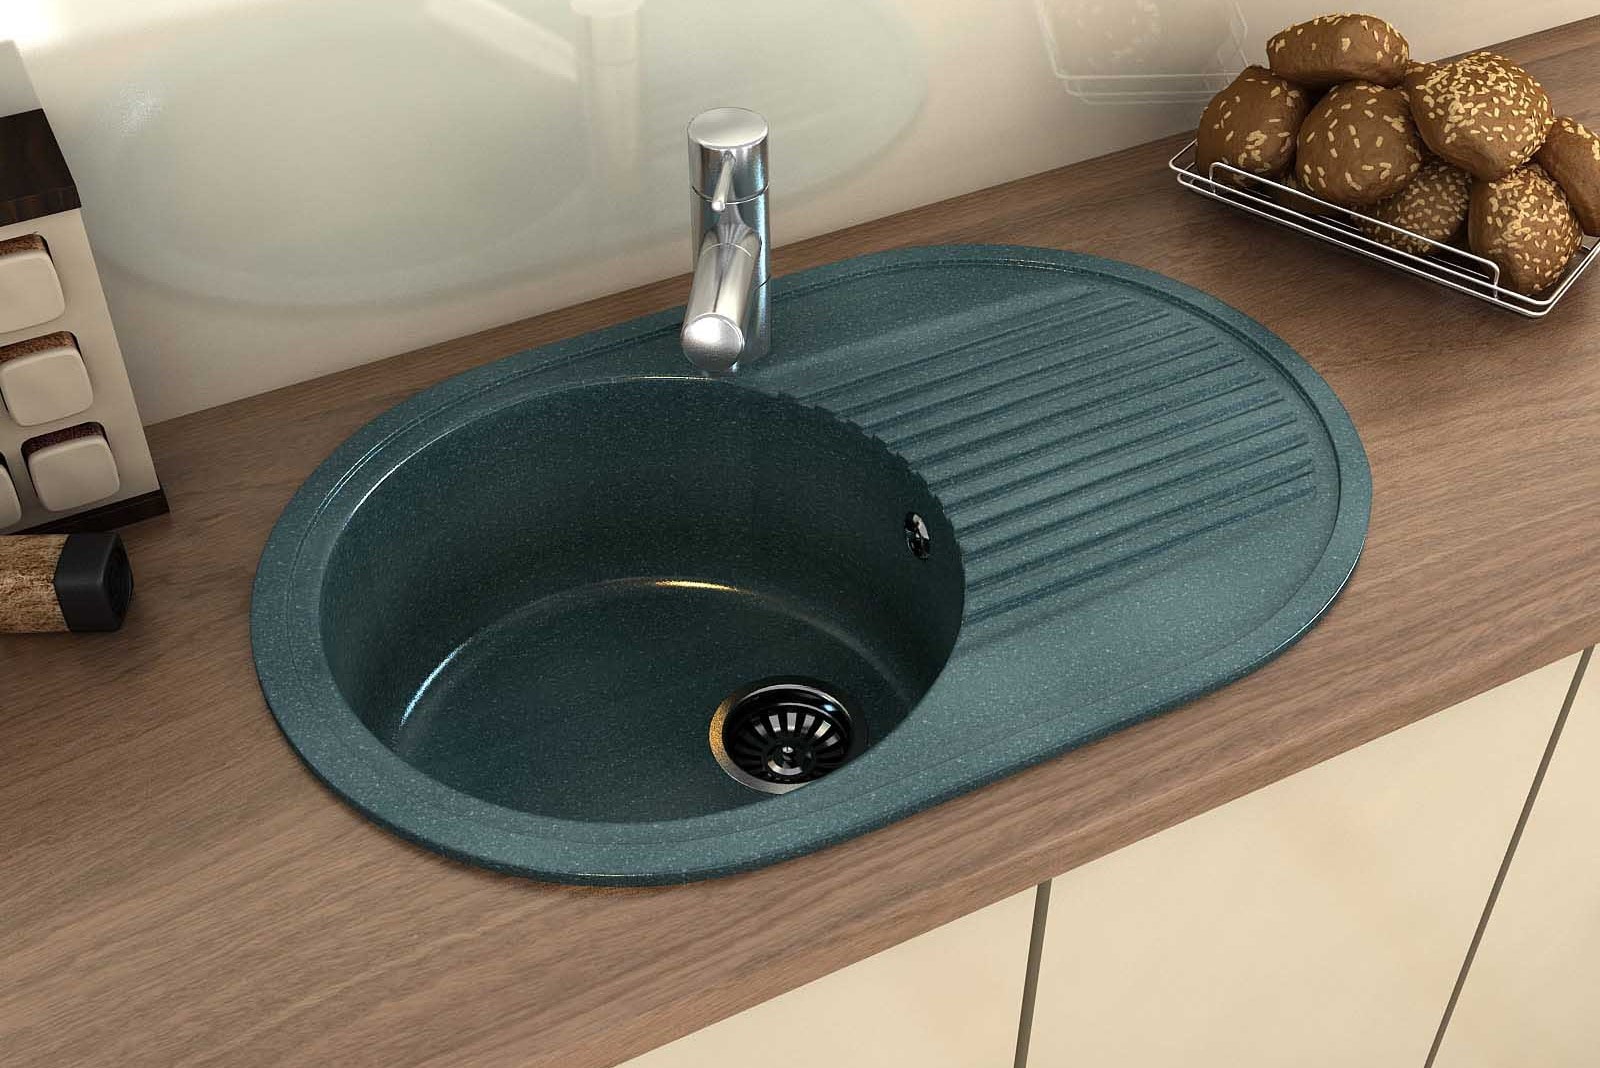 artificial stone kitchen sink